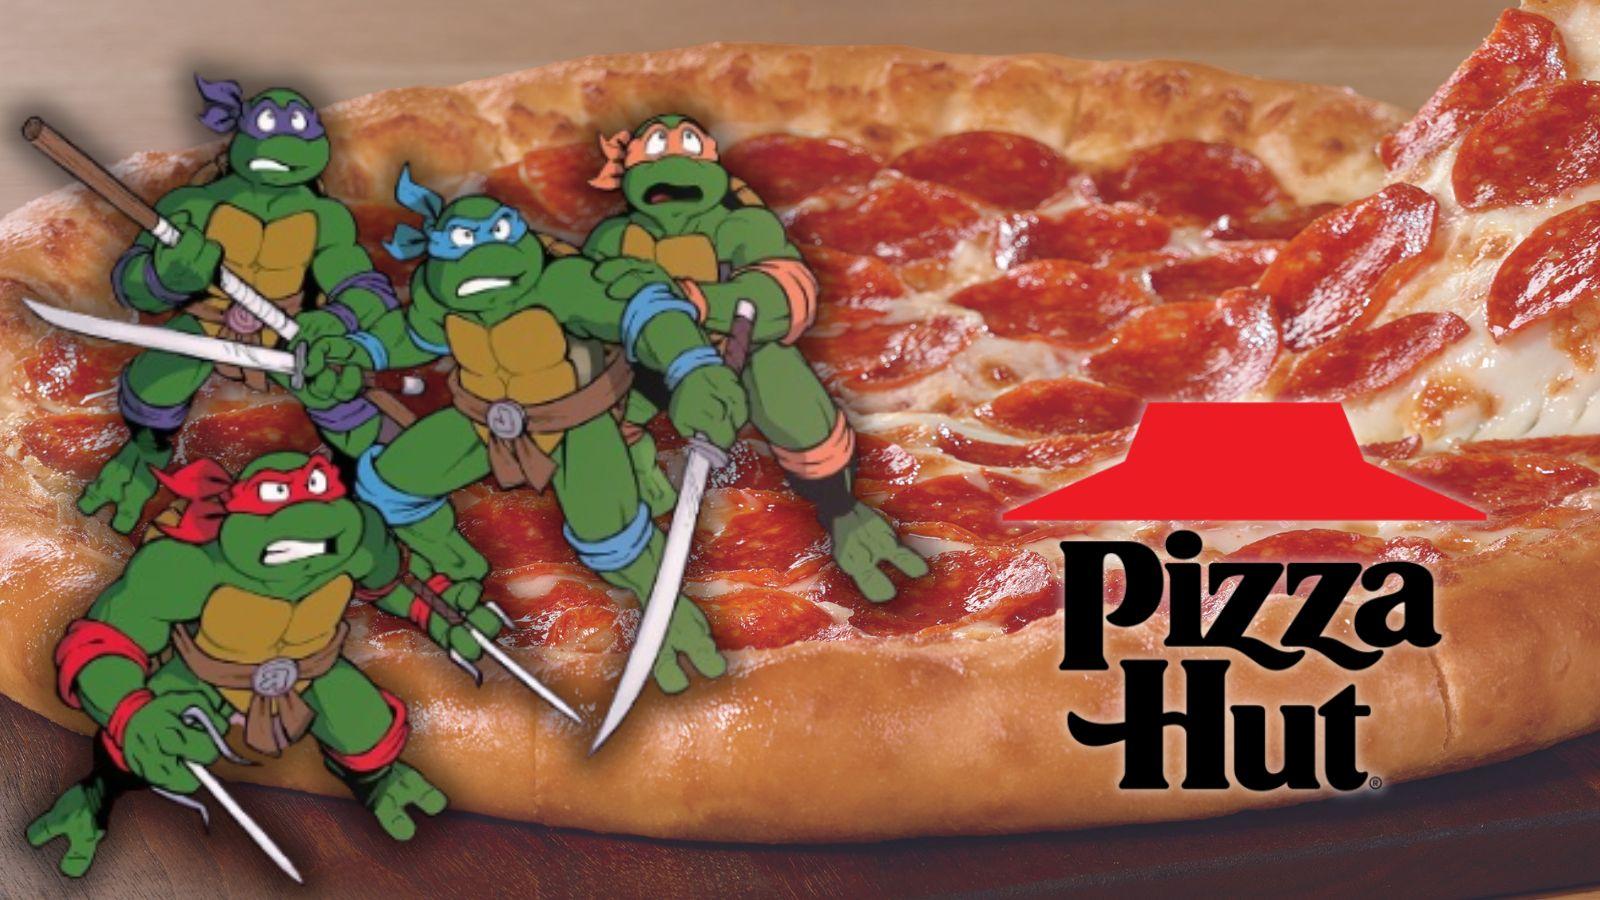 Teenage Mutant Ninja Turtle Pizza Hut